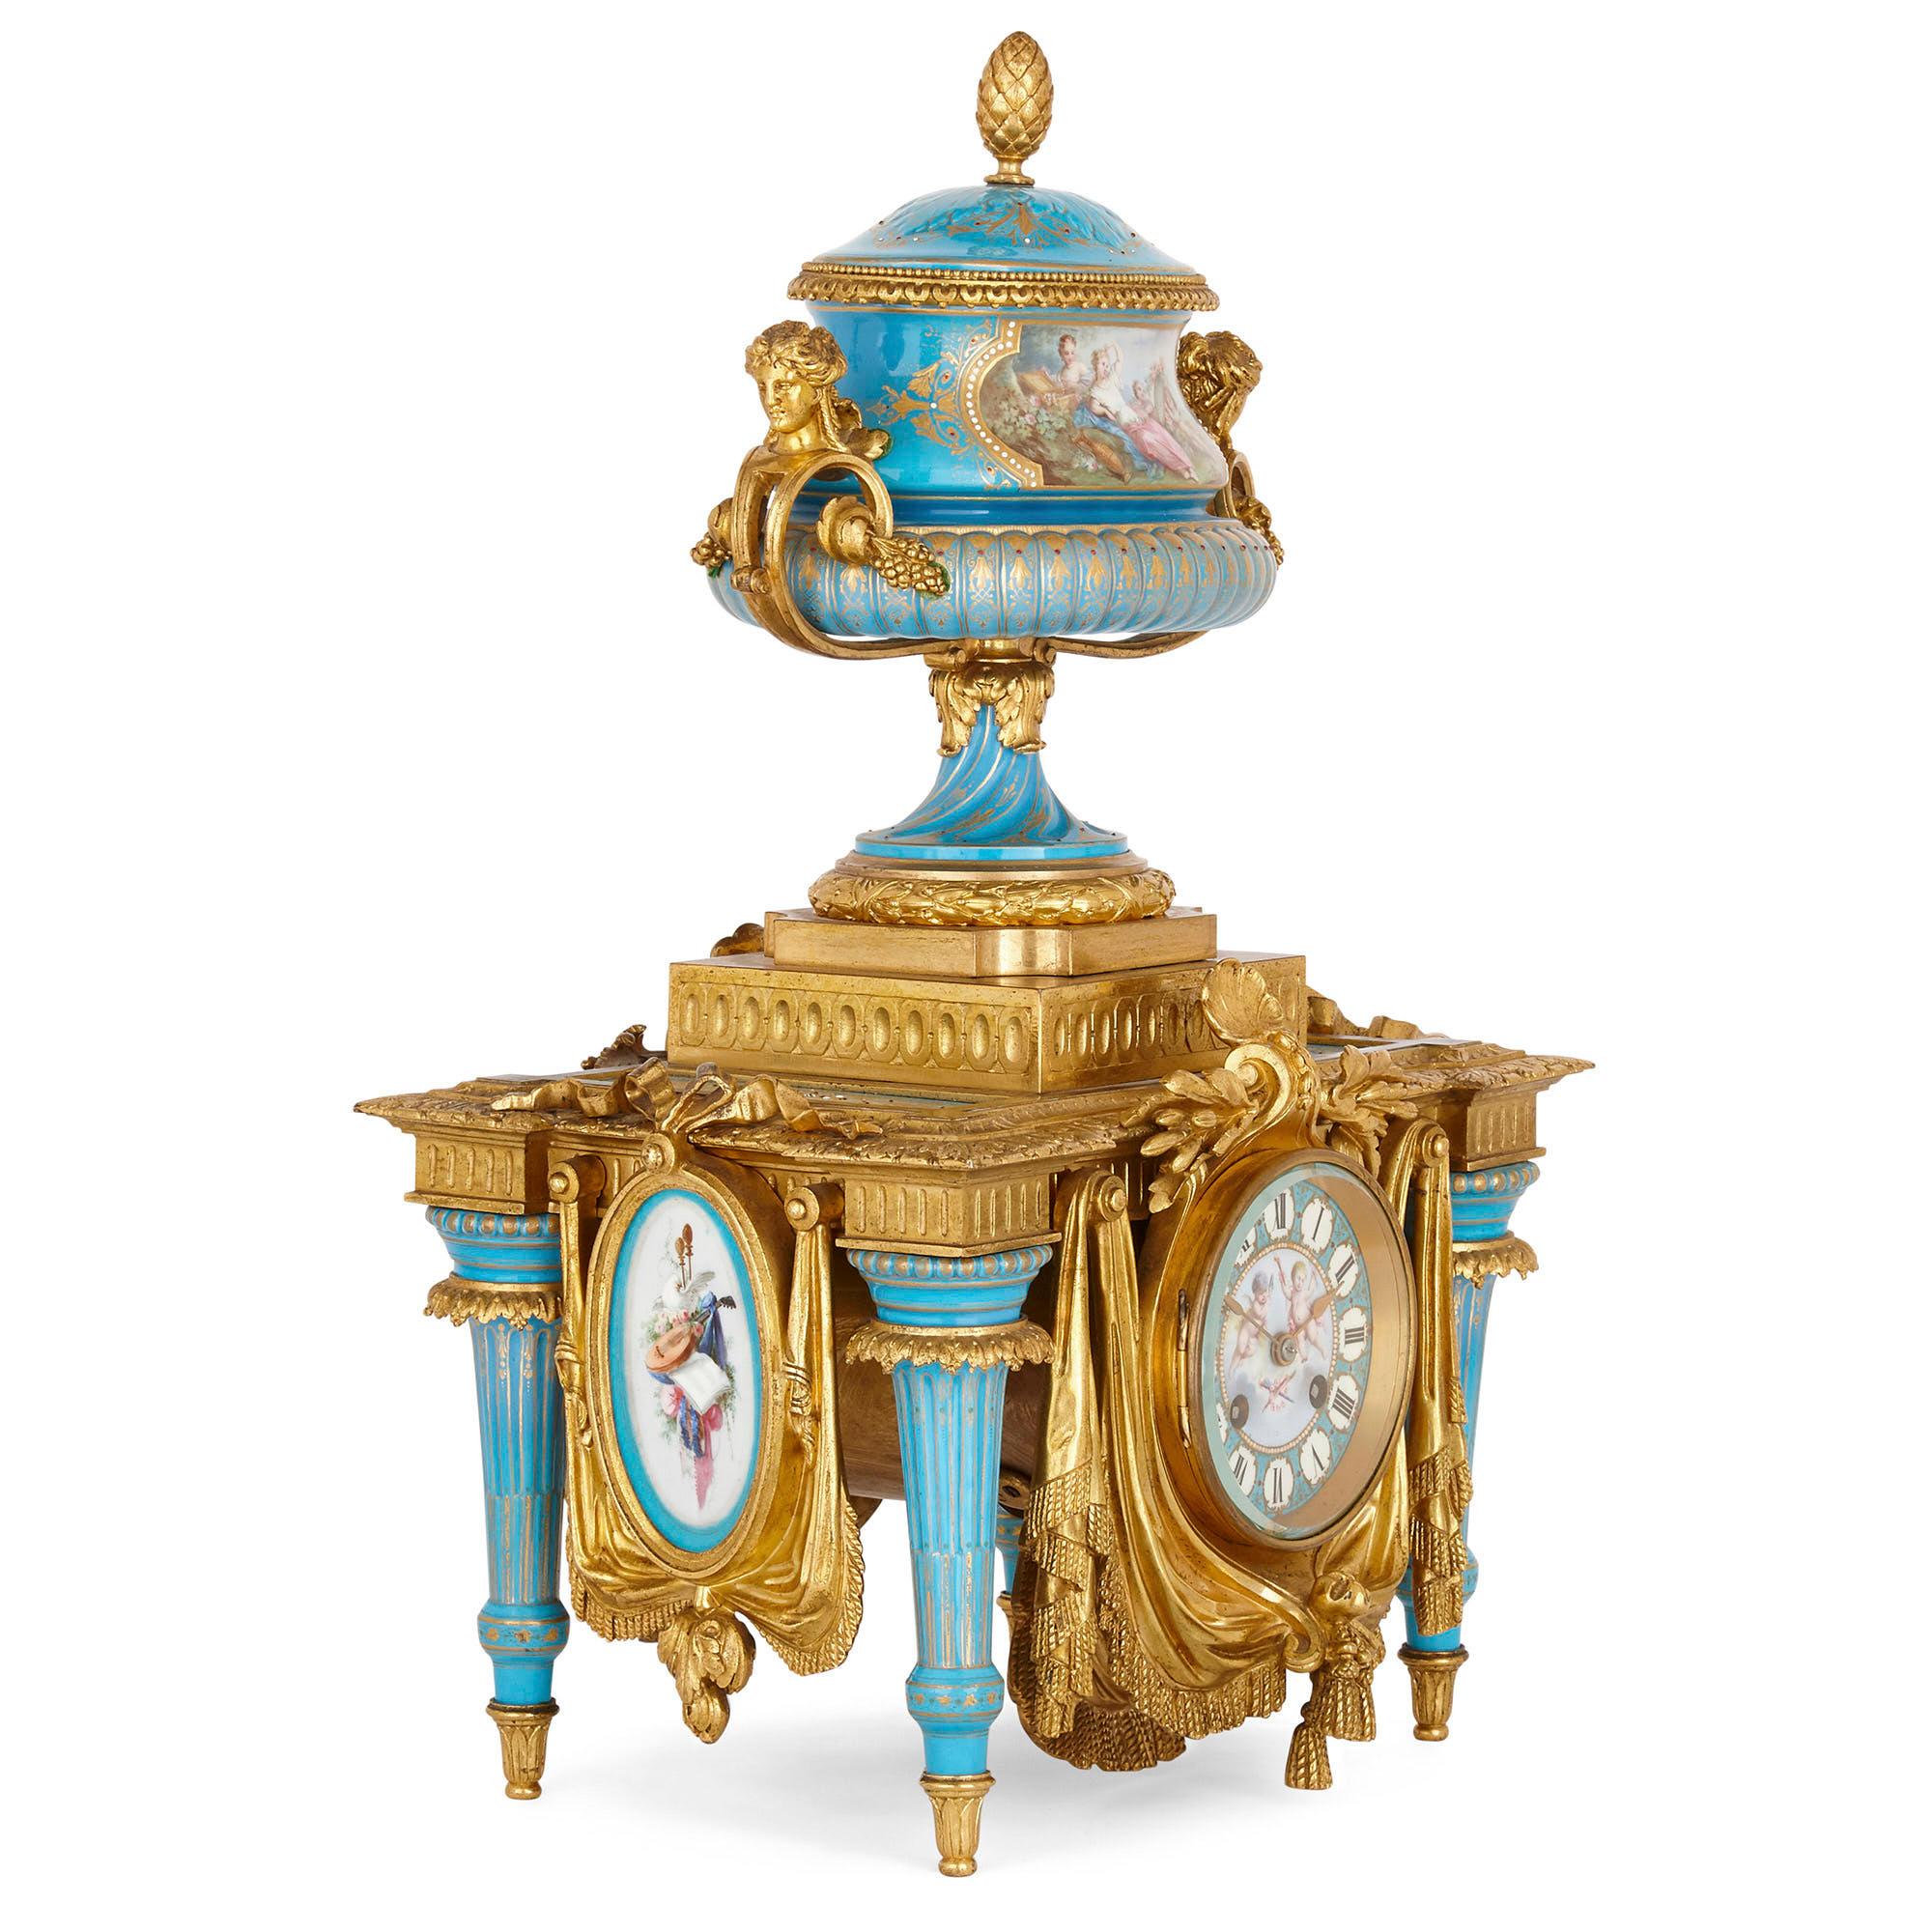 Vergoldete Bronze und Sèvres-Stil Porzellan Uhr Garnitur
Französisch, 19. Jahrhundert
Maße: Höhe der Uhr 46cm, Breite 29cm, Tiefe 24cm
Kandelaber Höhe 59cm, Breite 22cm, Tiefe 16cm

Dieses außergewöhnliche Uhrenset ist ein bemerkenswertes